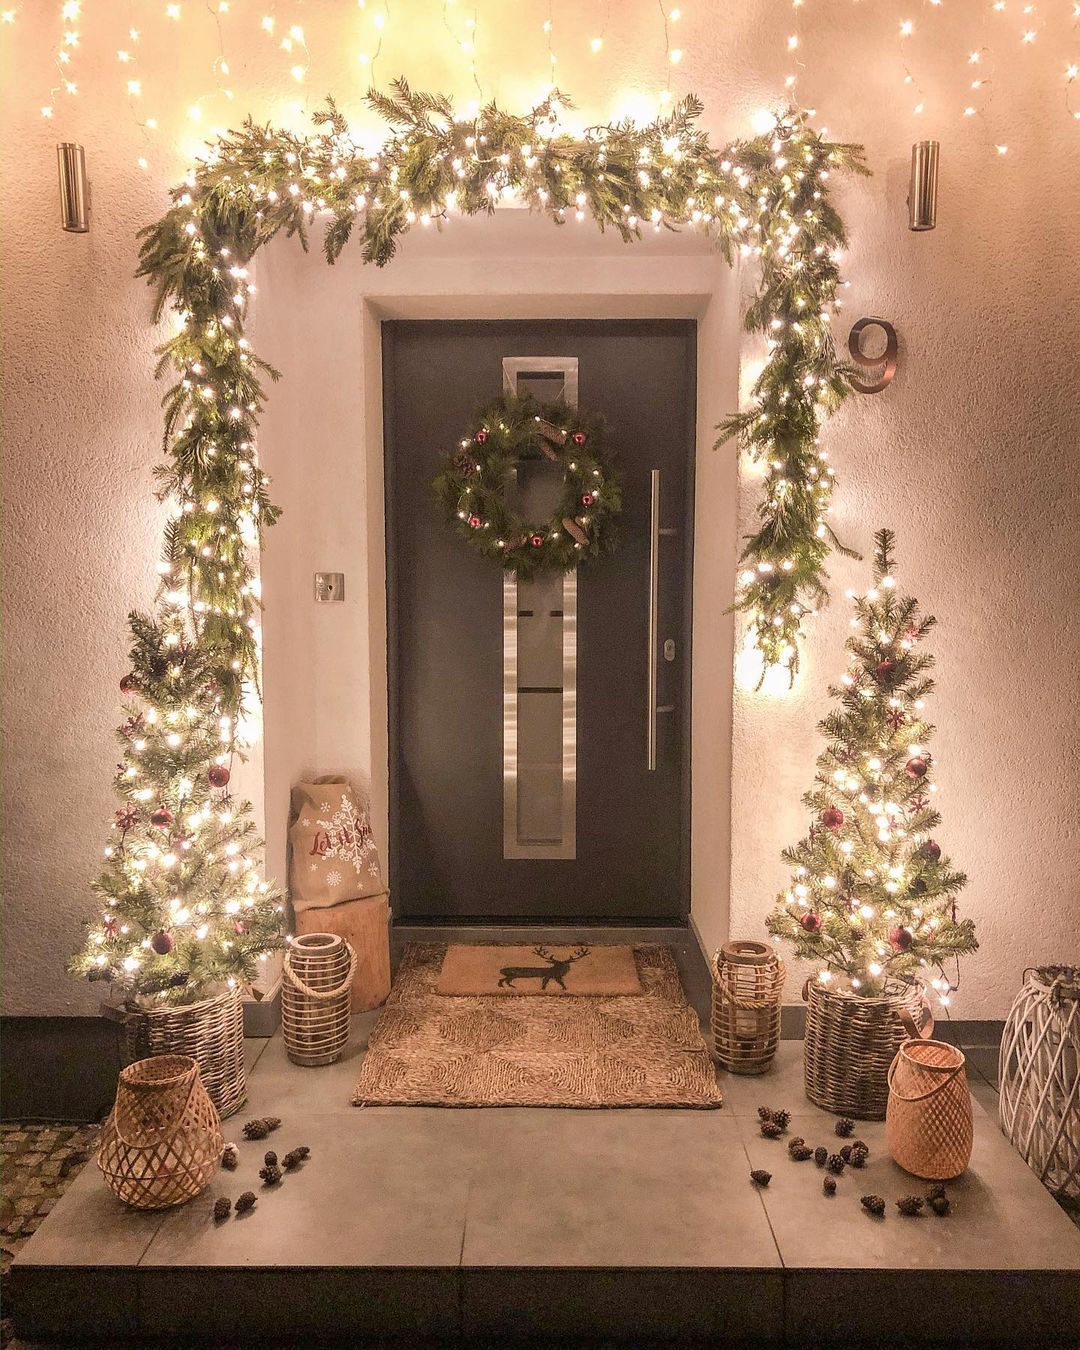 umade-聖誕節佈置Ideas-聖誕樹佈置-玄關佈置-門口佈置-白色-金色-綠色-銀色-木頭色-聖誕玄關/門裝飾聖誕花圈＋聖誕樹，再搭配必備燈光點綴，滿滿聖誕氛圍。